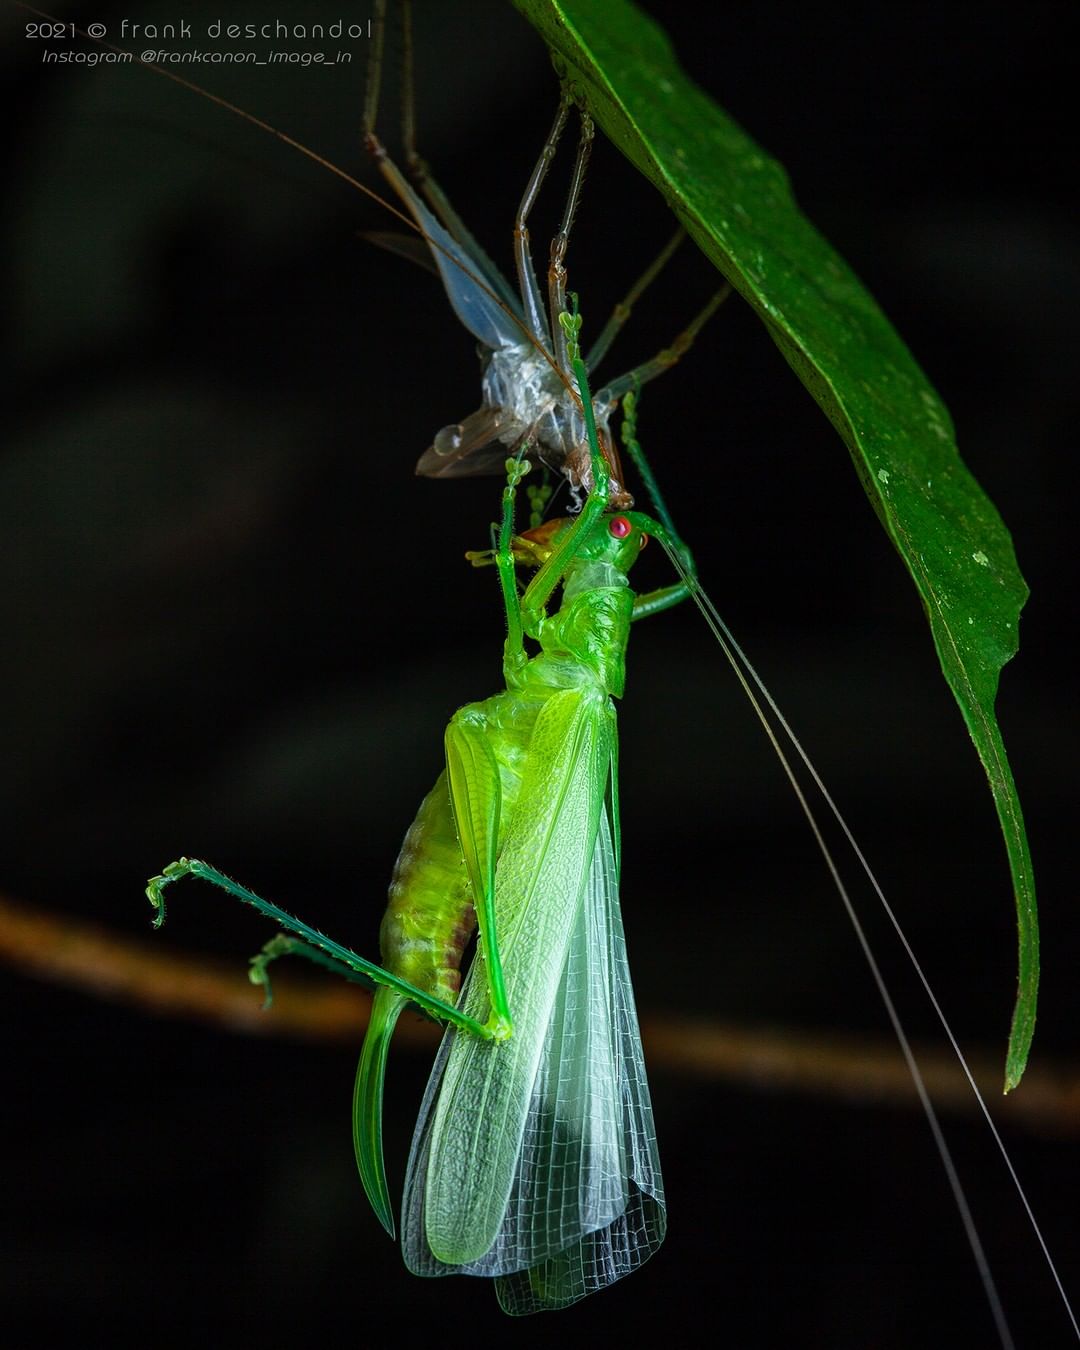 Снимки животных и насекомых от Фрэнка Дешандола Животные